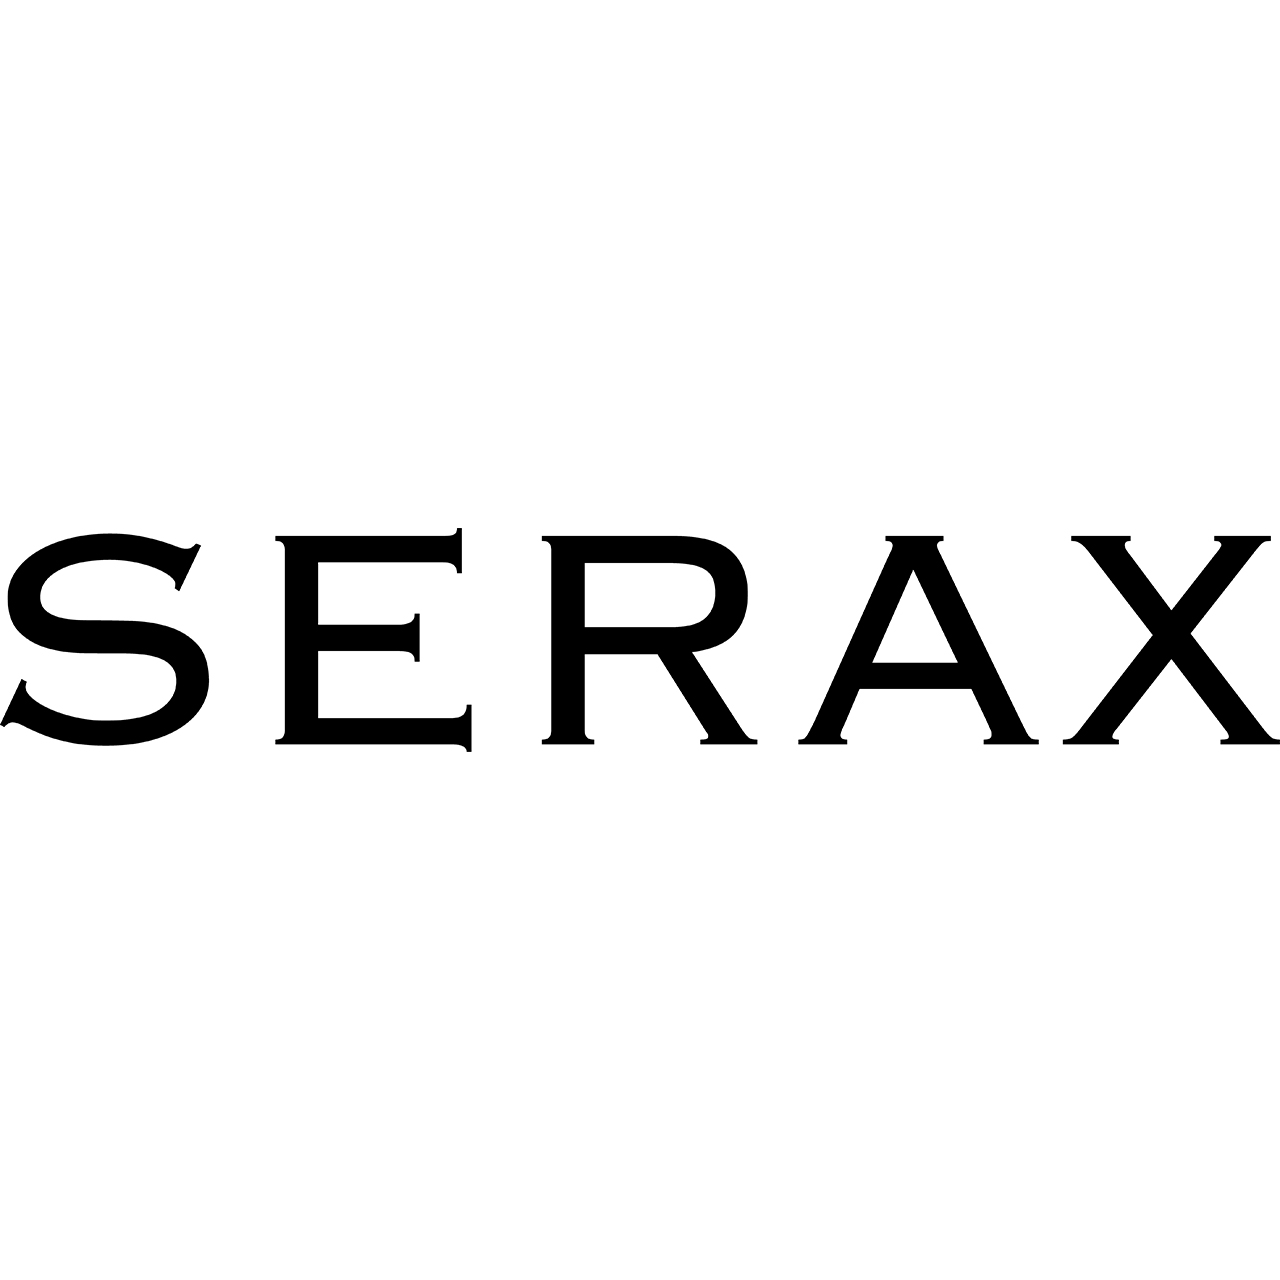 Serax